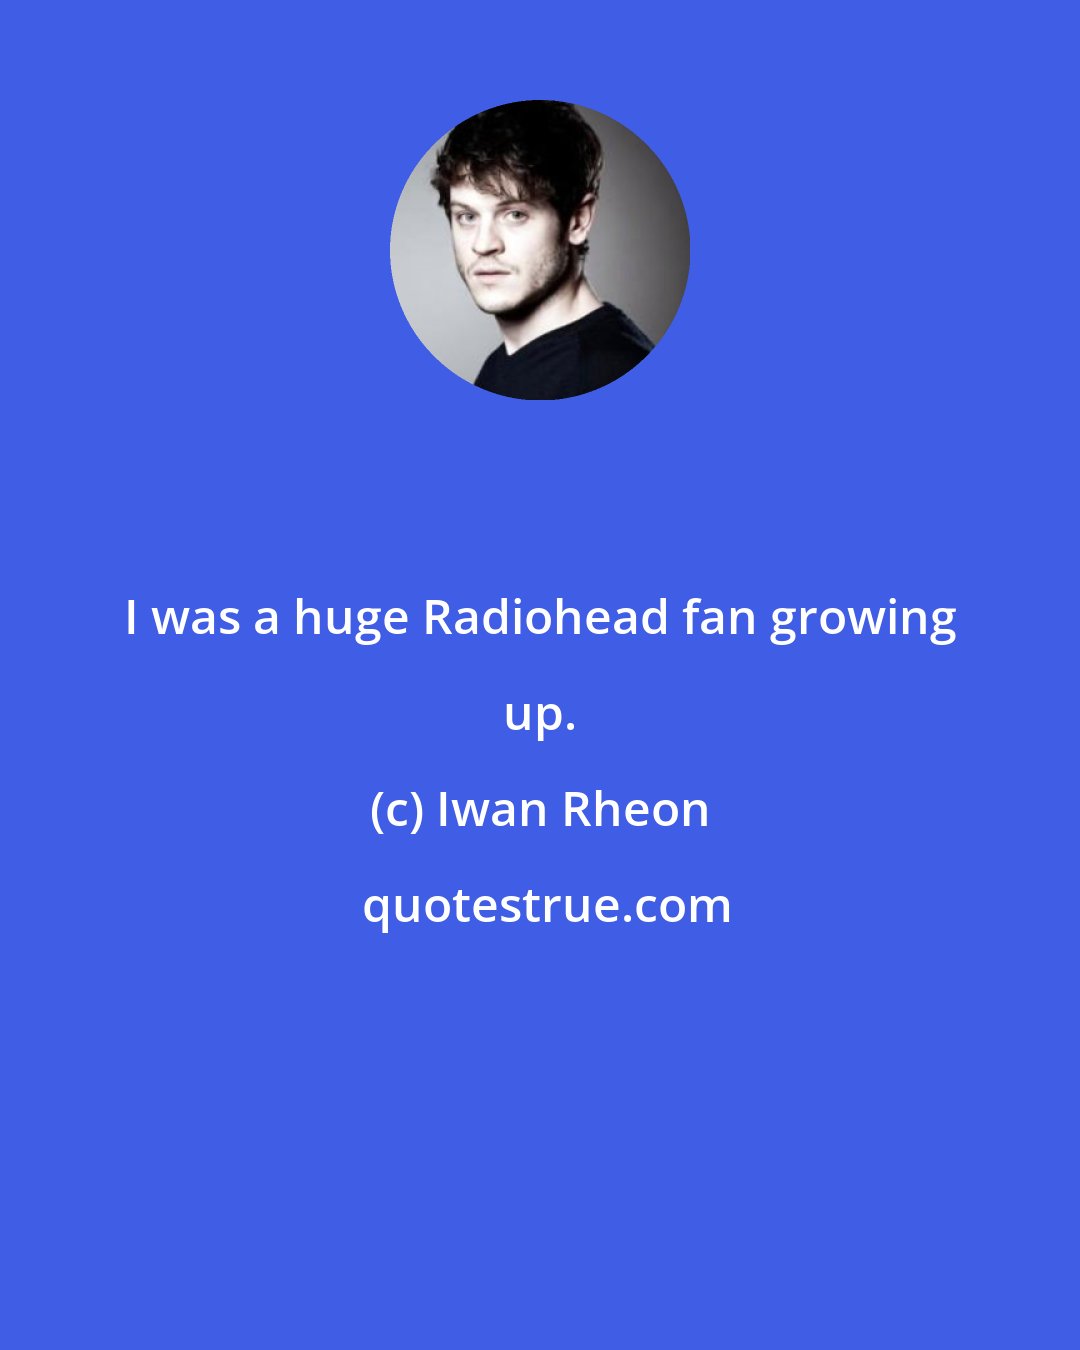 Iwan Rheon: I was a huge Radiohead fan growing up.